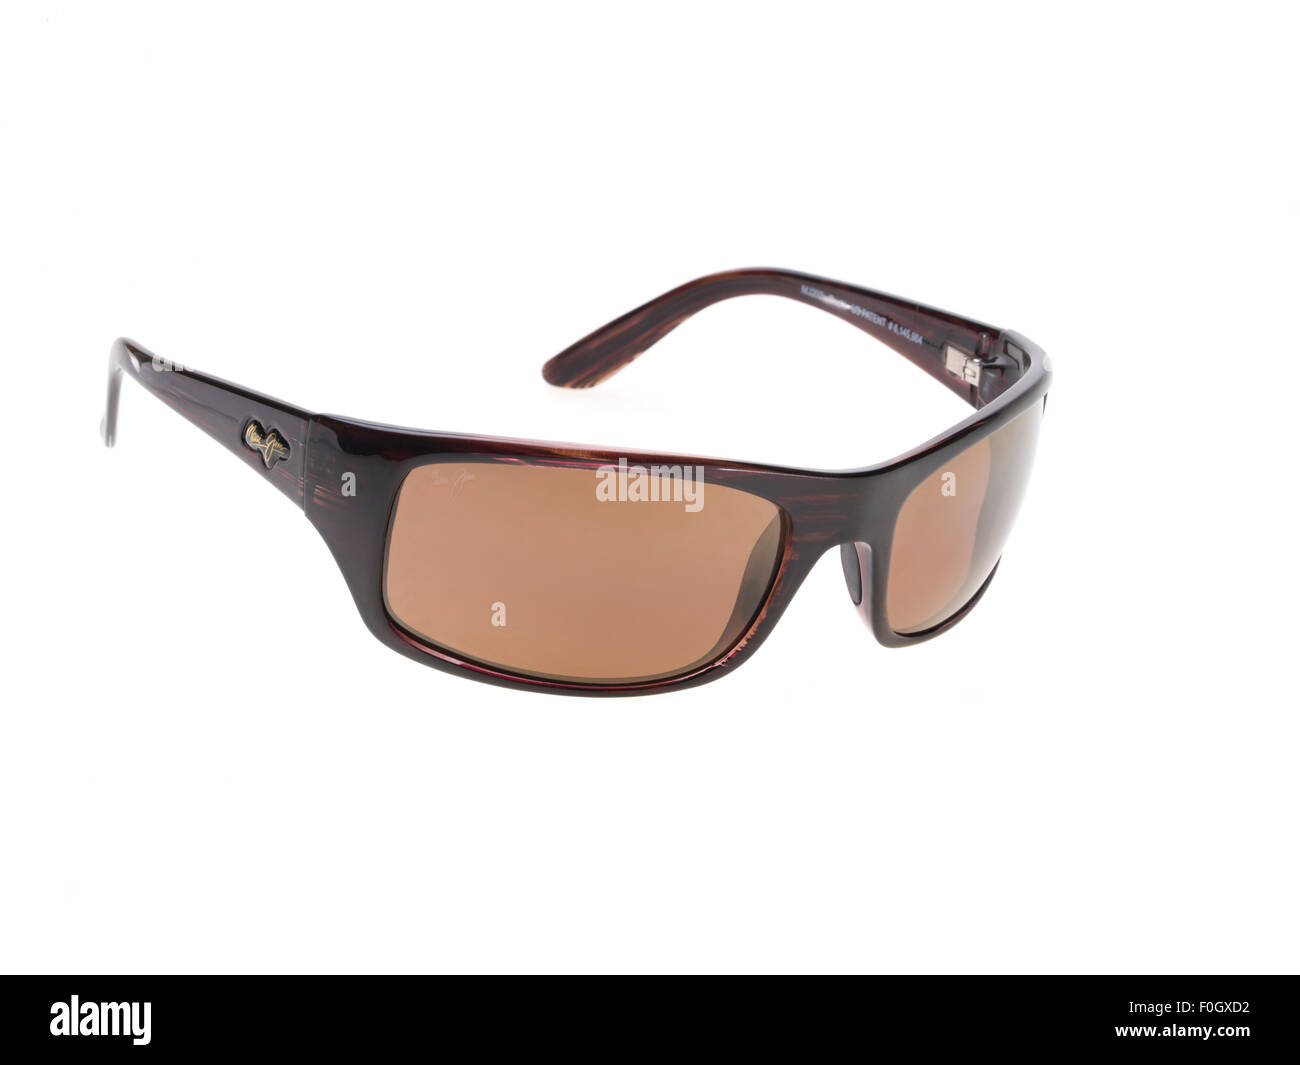 Maui Jim gafas de sol polarizadas creado en Hawaii, EE.UU. Modelo - Peahi, Borgoña con HCL lentes de bronce Fotografía de stock Alamy